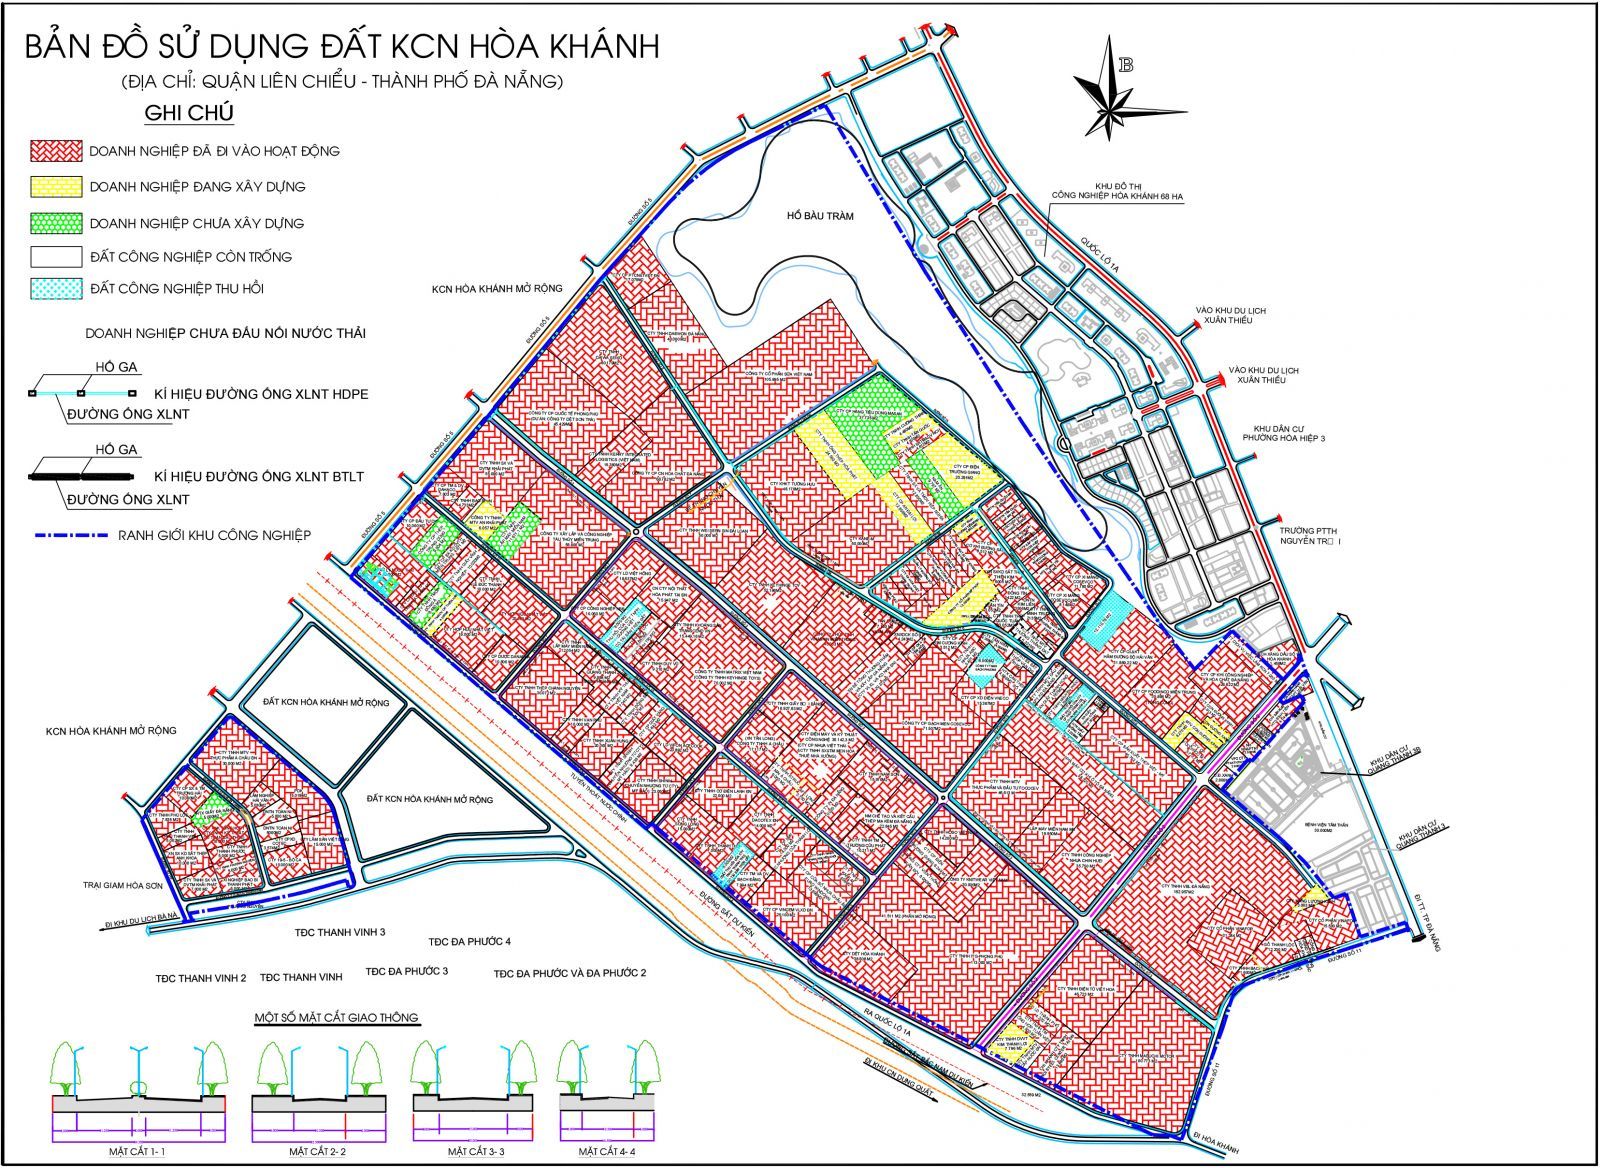 Bản đồ quy hoạch Đà Nẵng nâng cấp từ năm 2019 lên năm 2024 phiên bản mới nhất, sẽ giúp người xem có được cái nhìn sâu sắc về những kế hoạch phát triển đầy triển vọng của thành phố Đà Nẵng trong tương lai gần. Cùng khám phá những kế hoạch mới nhất để hiểu rõ hơn về thành phố xinh đẹp này.